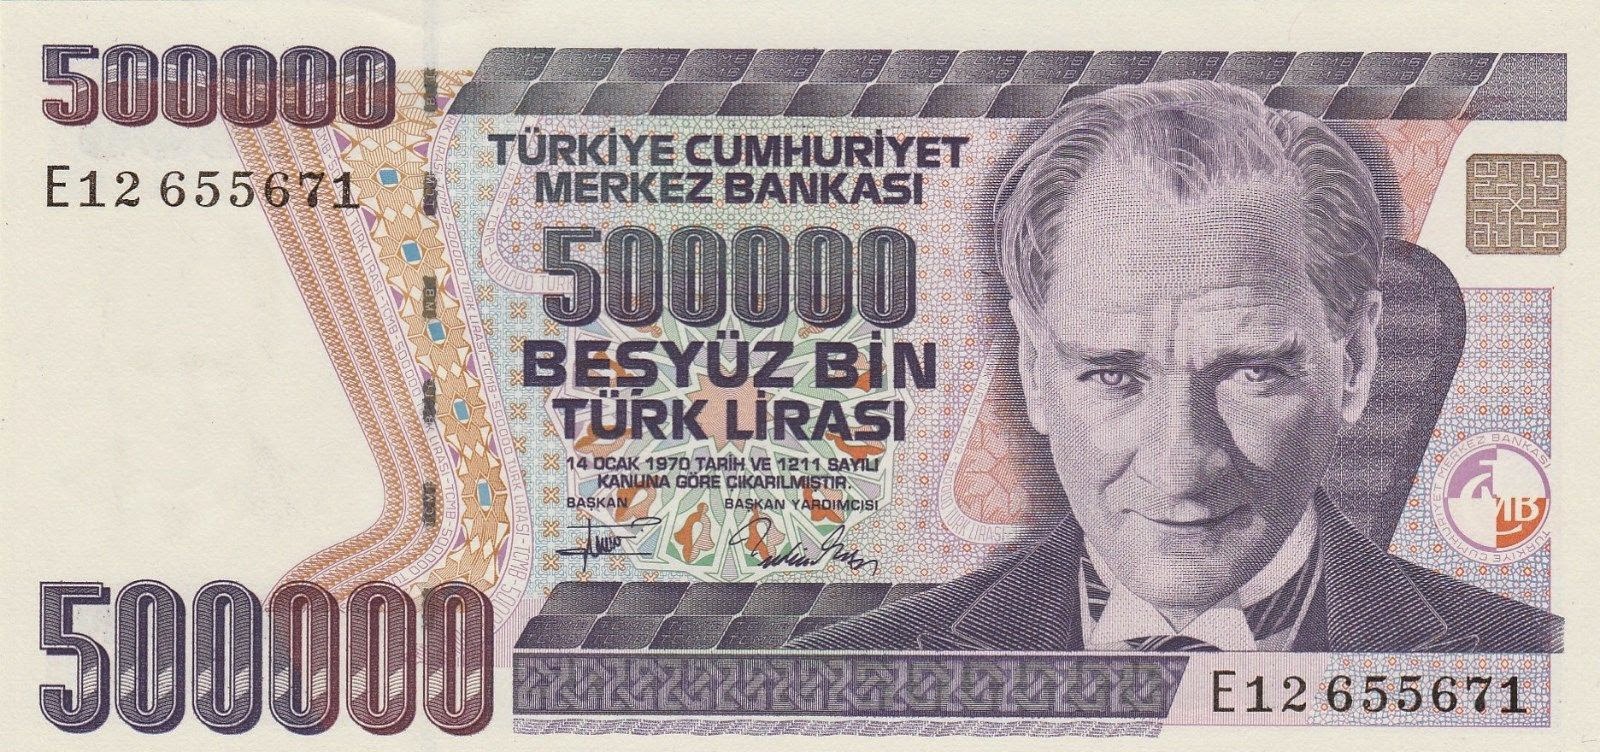 Turkey Banknotes 500000 Turkish Lira note "Türk Lirasi" 1997 Mustafa Kemal Atatürk